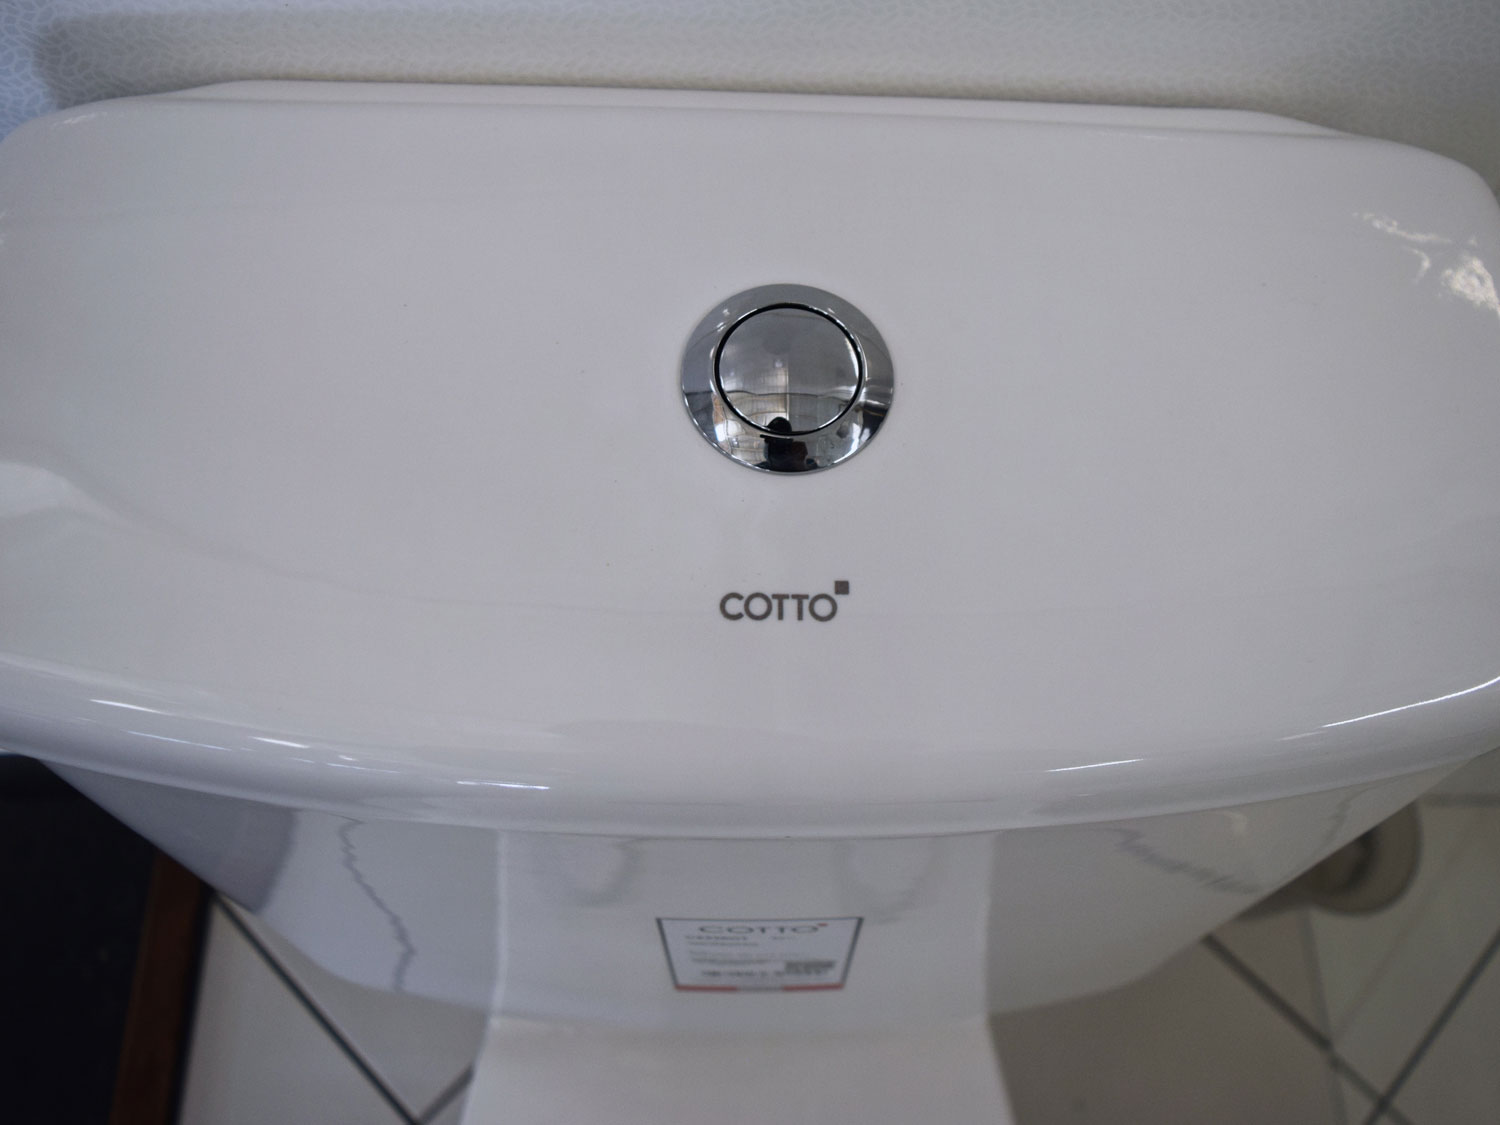 COTTO Lunar Toilet Suite